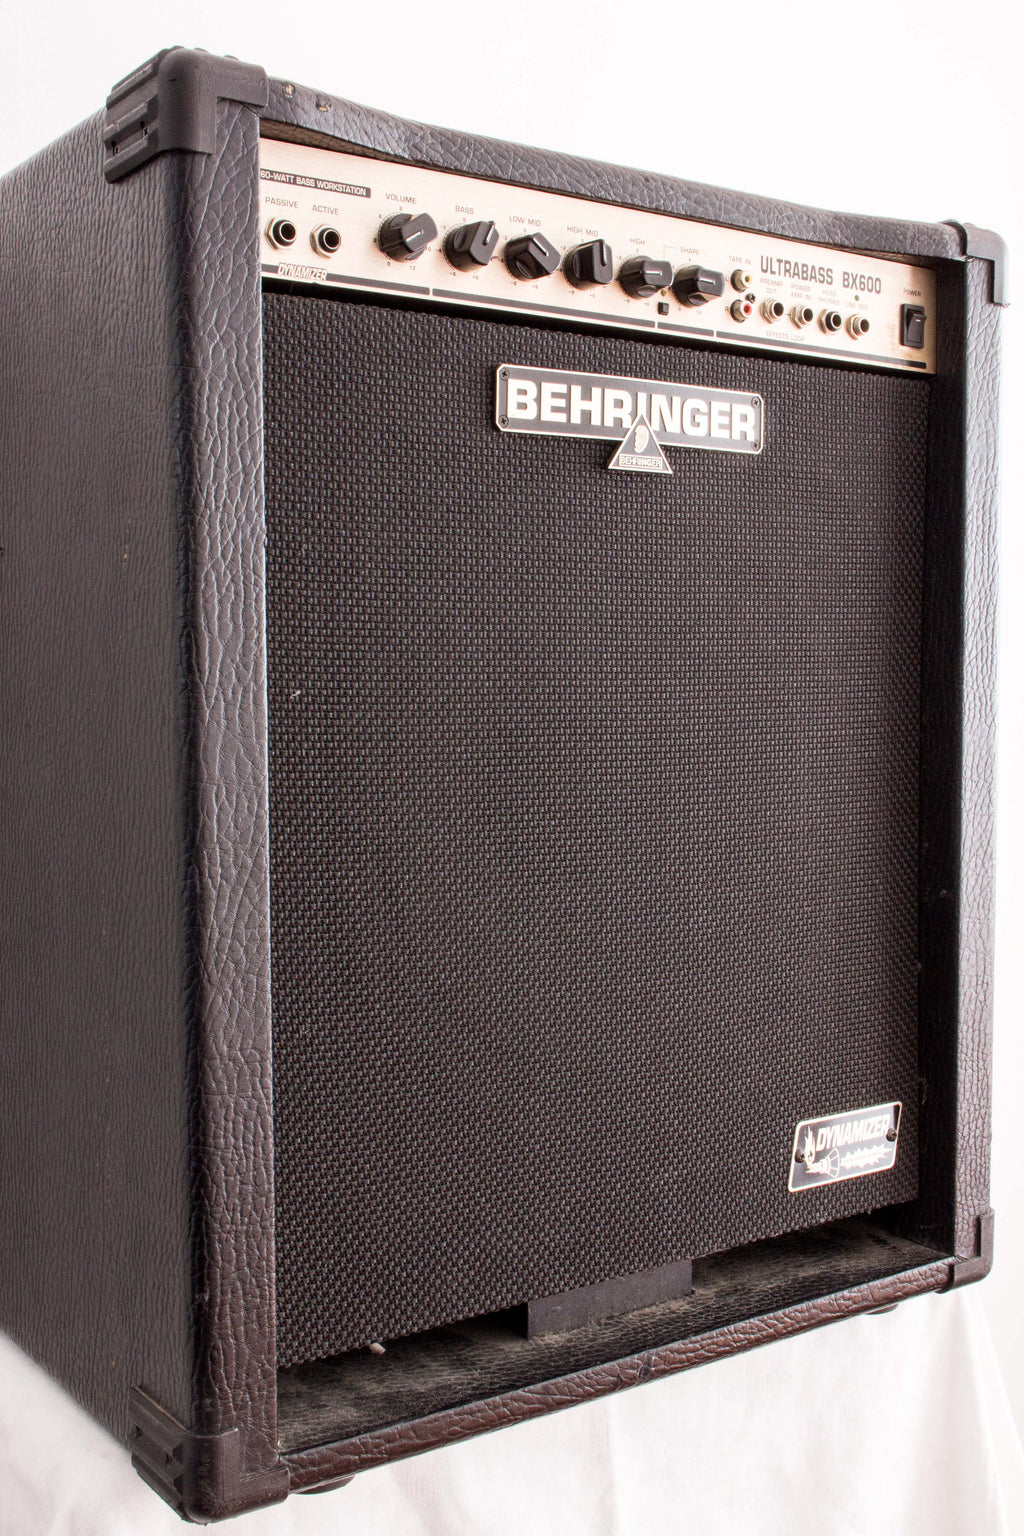 Behringer Ultrabass BX600 12" Bass Combo Amp